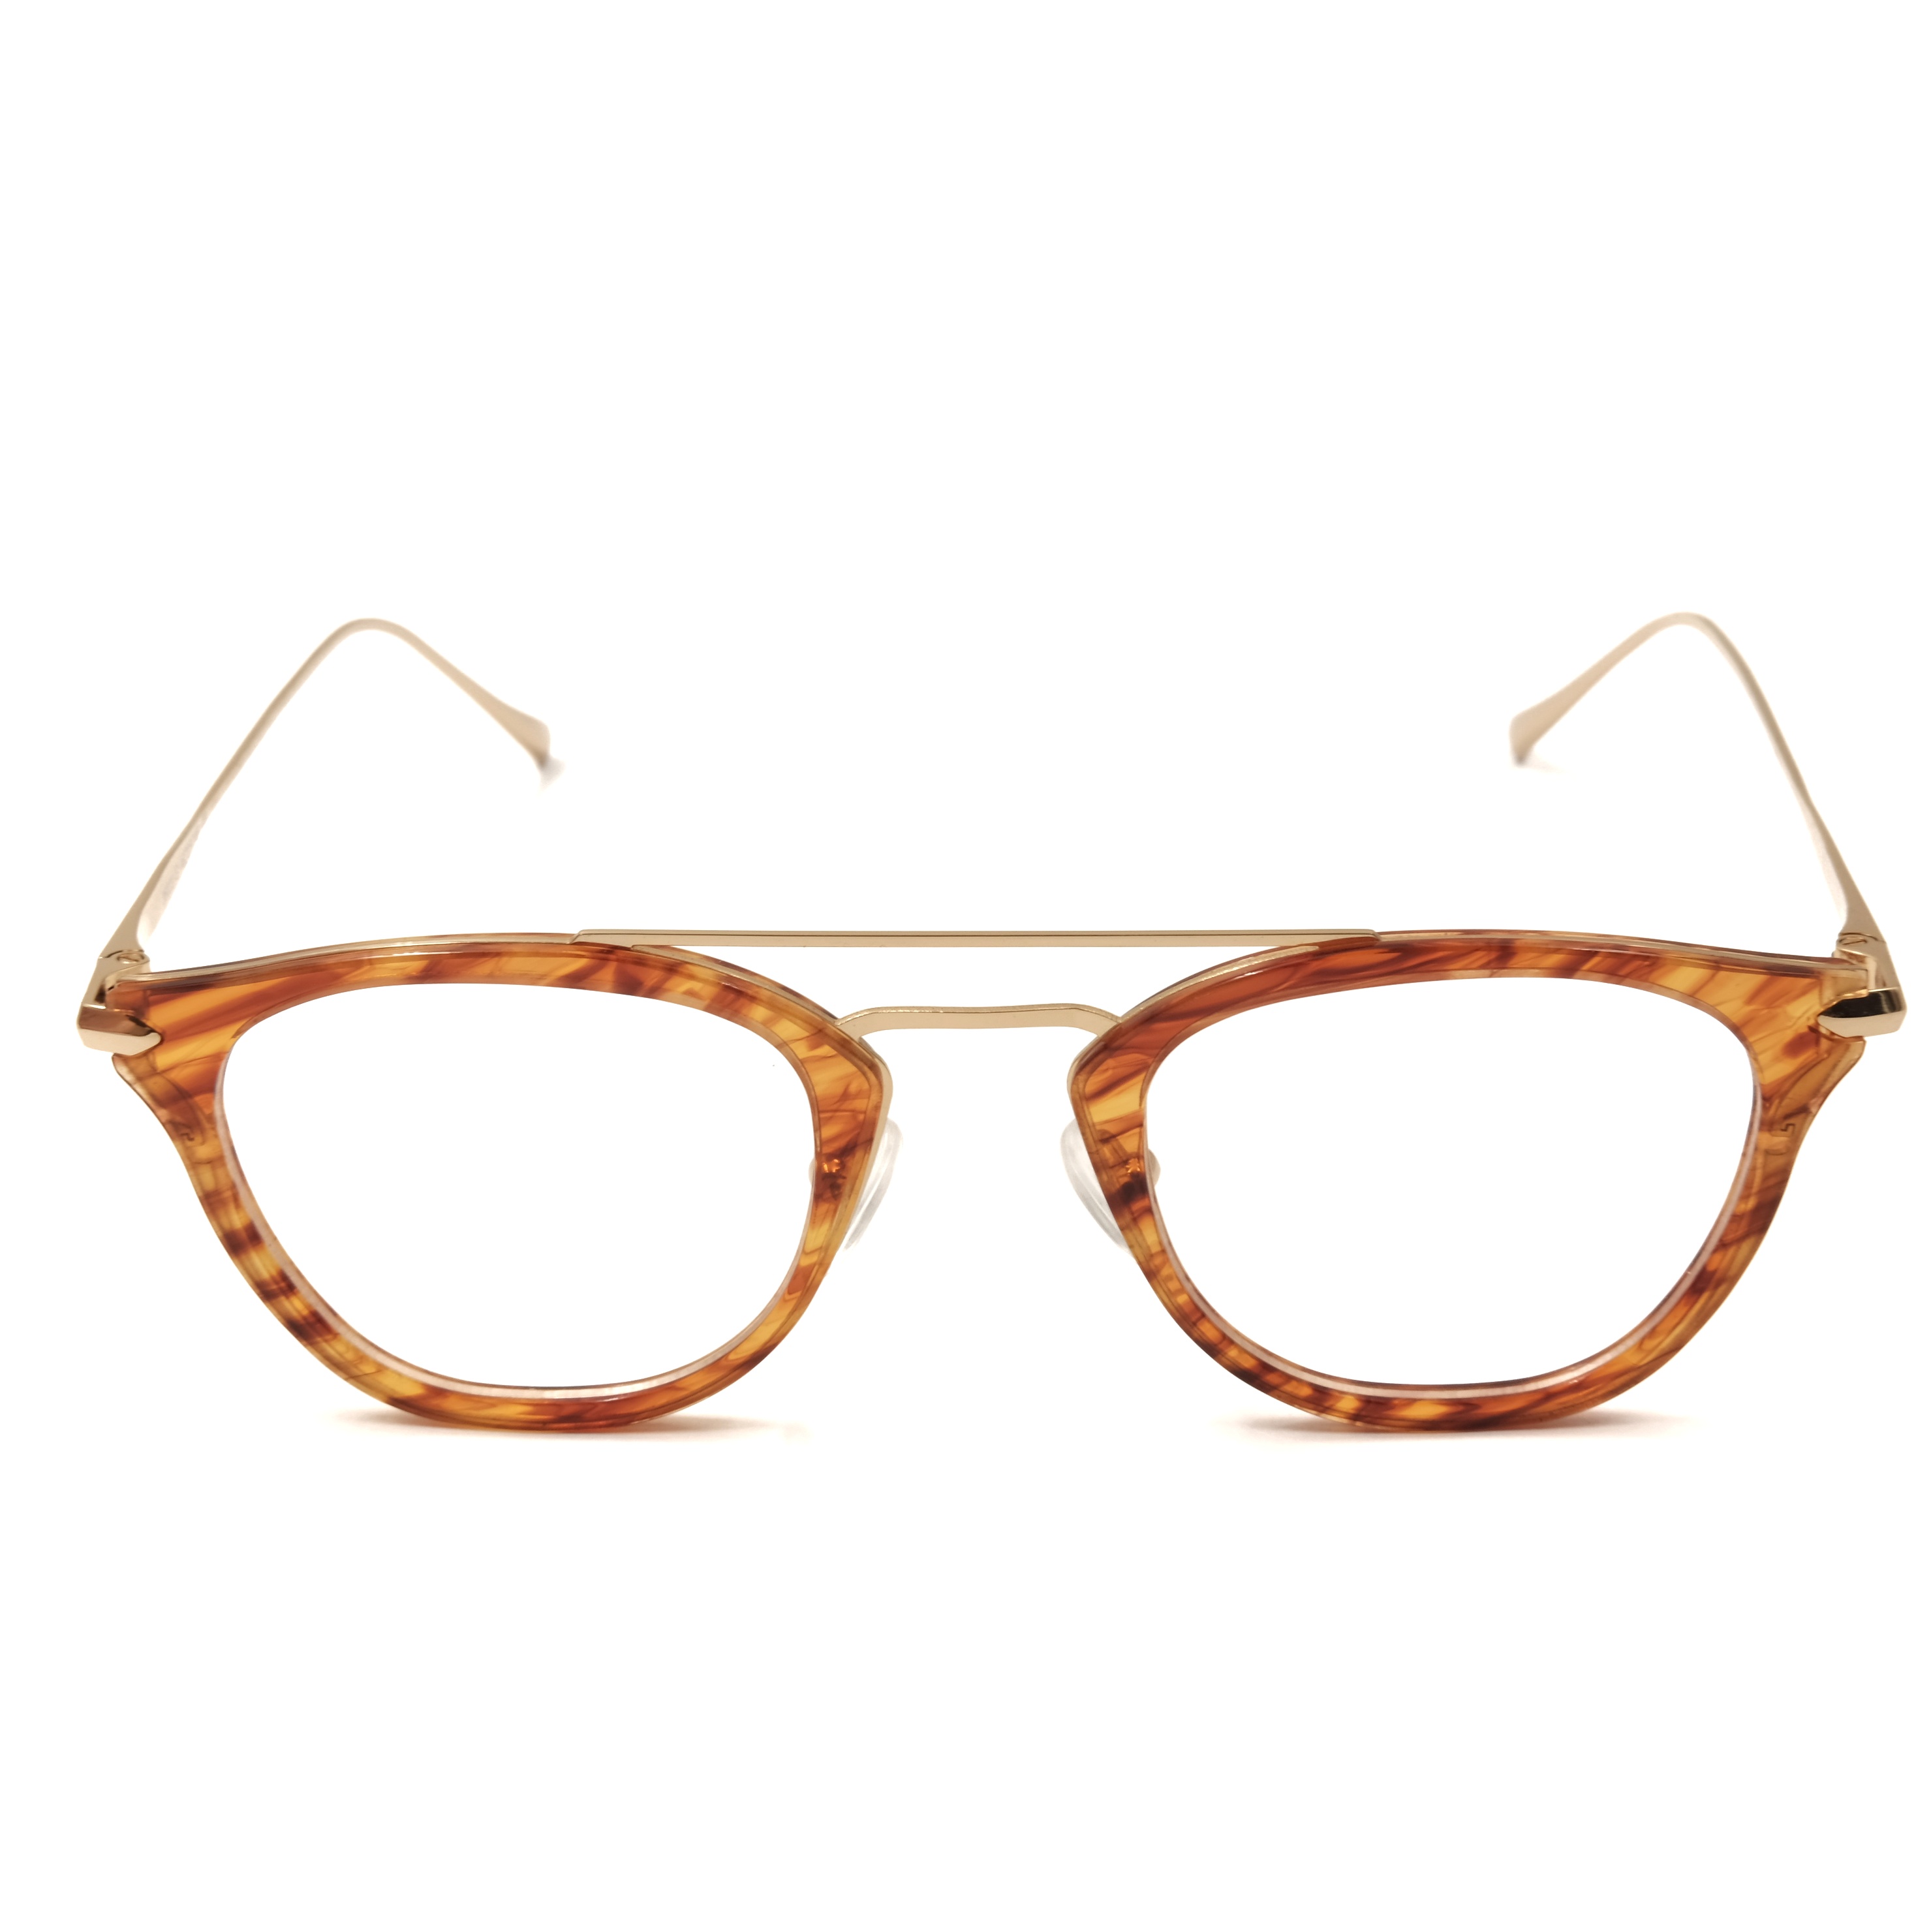 Acetate Eyeglasses Frame Custom Reading Glasses Blue Light Glasses Supplier